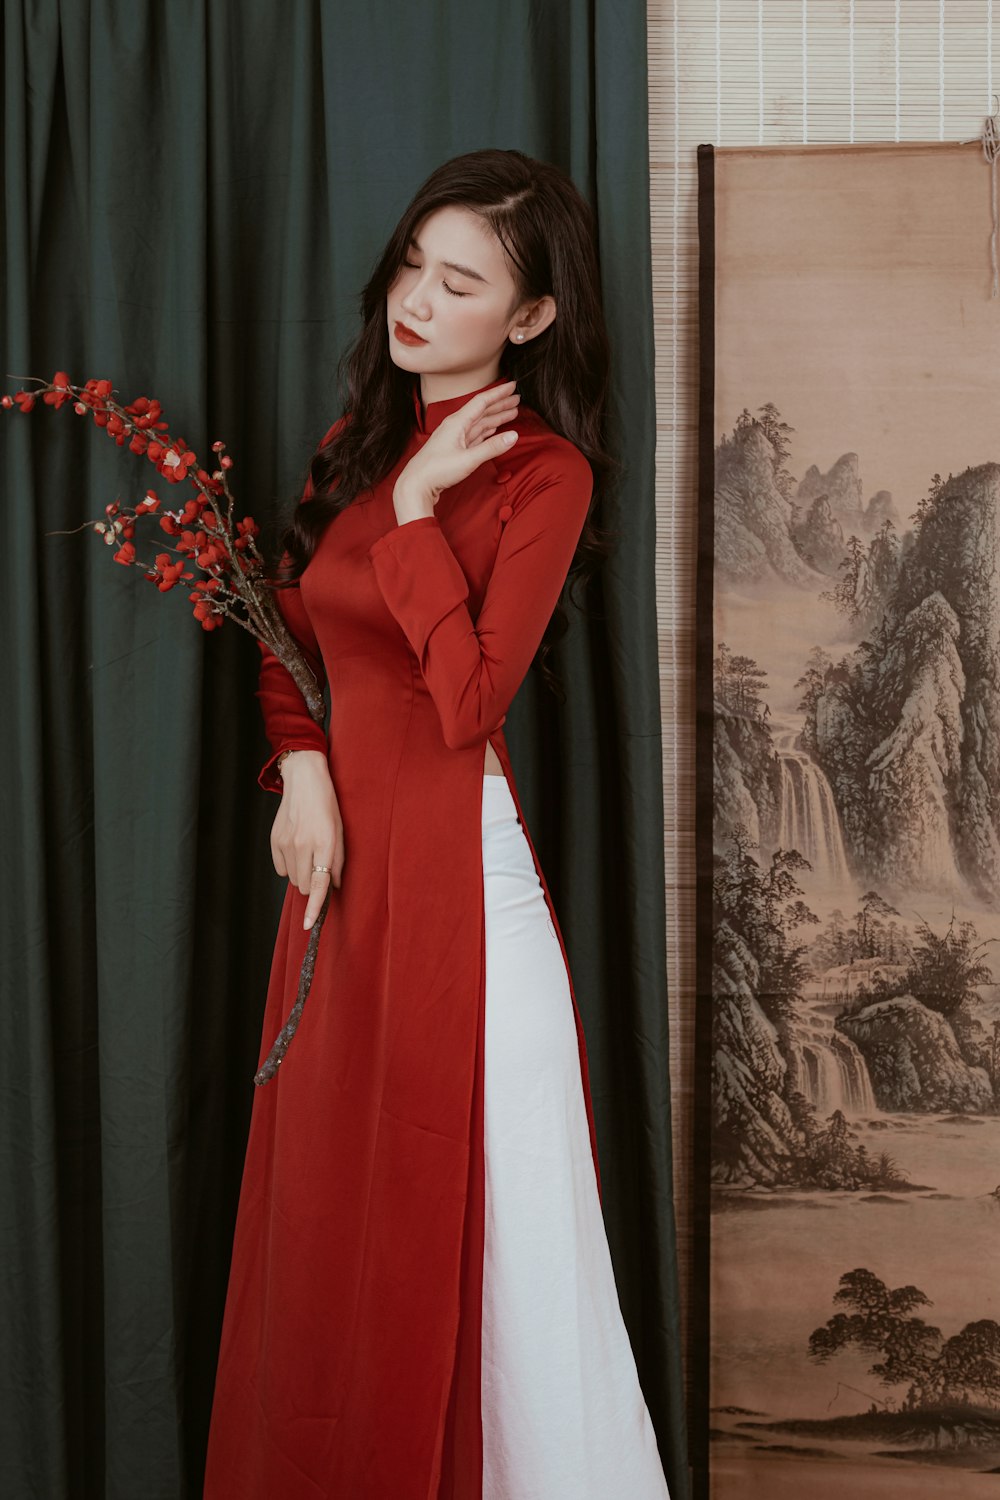 une femme vêtue d’un long manteau rouge et d’une robe blanche